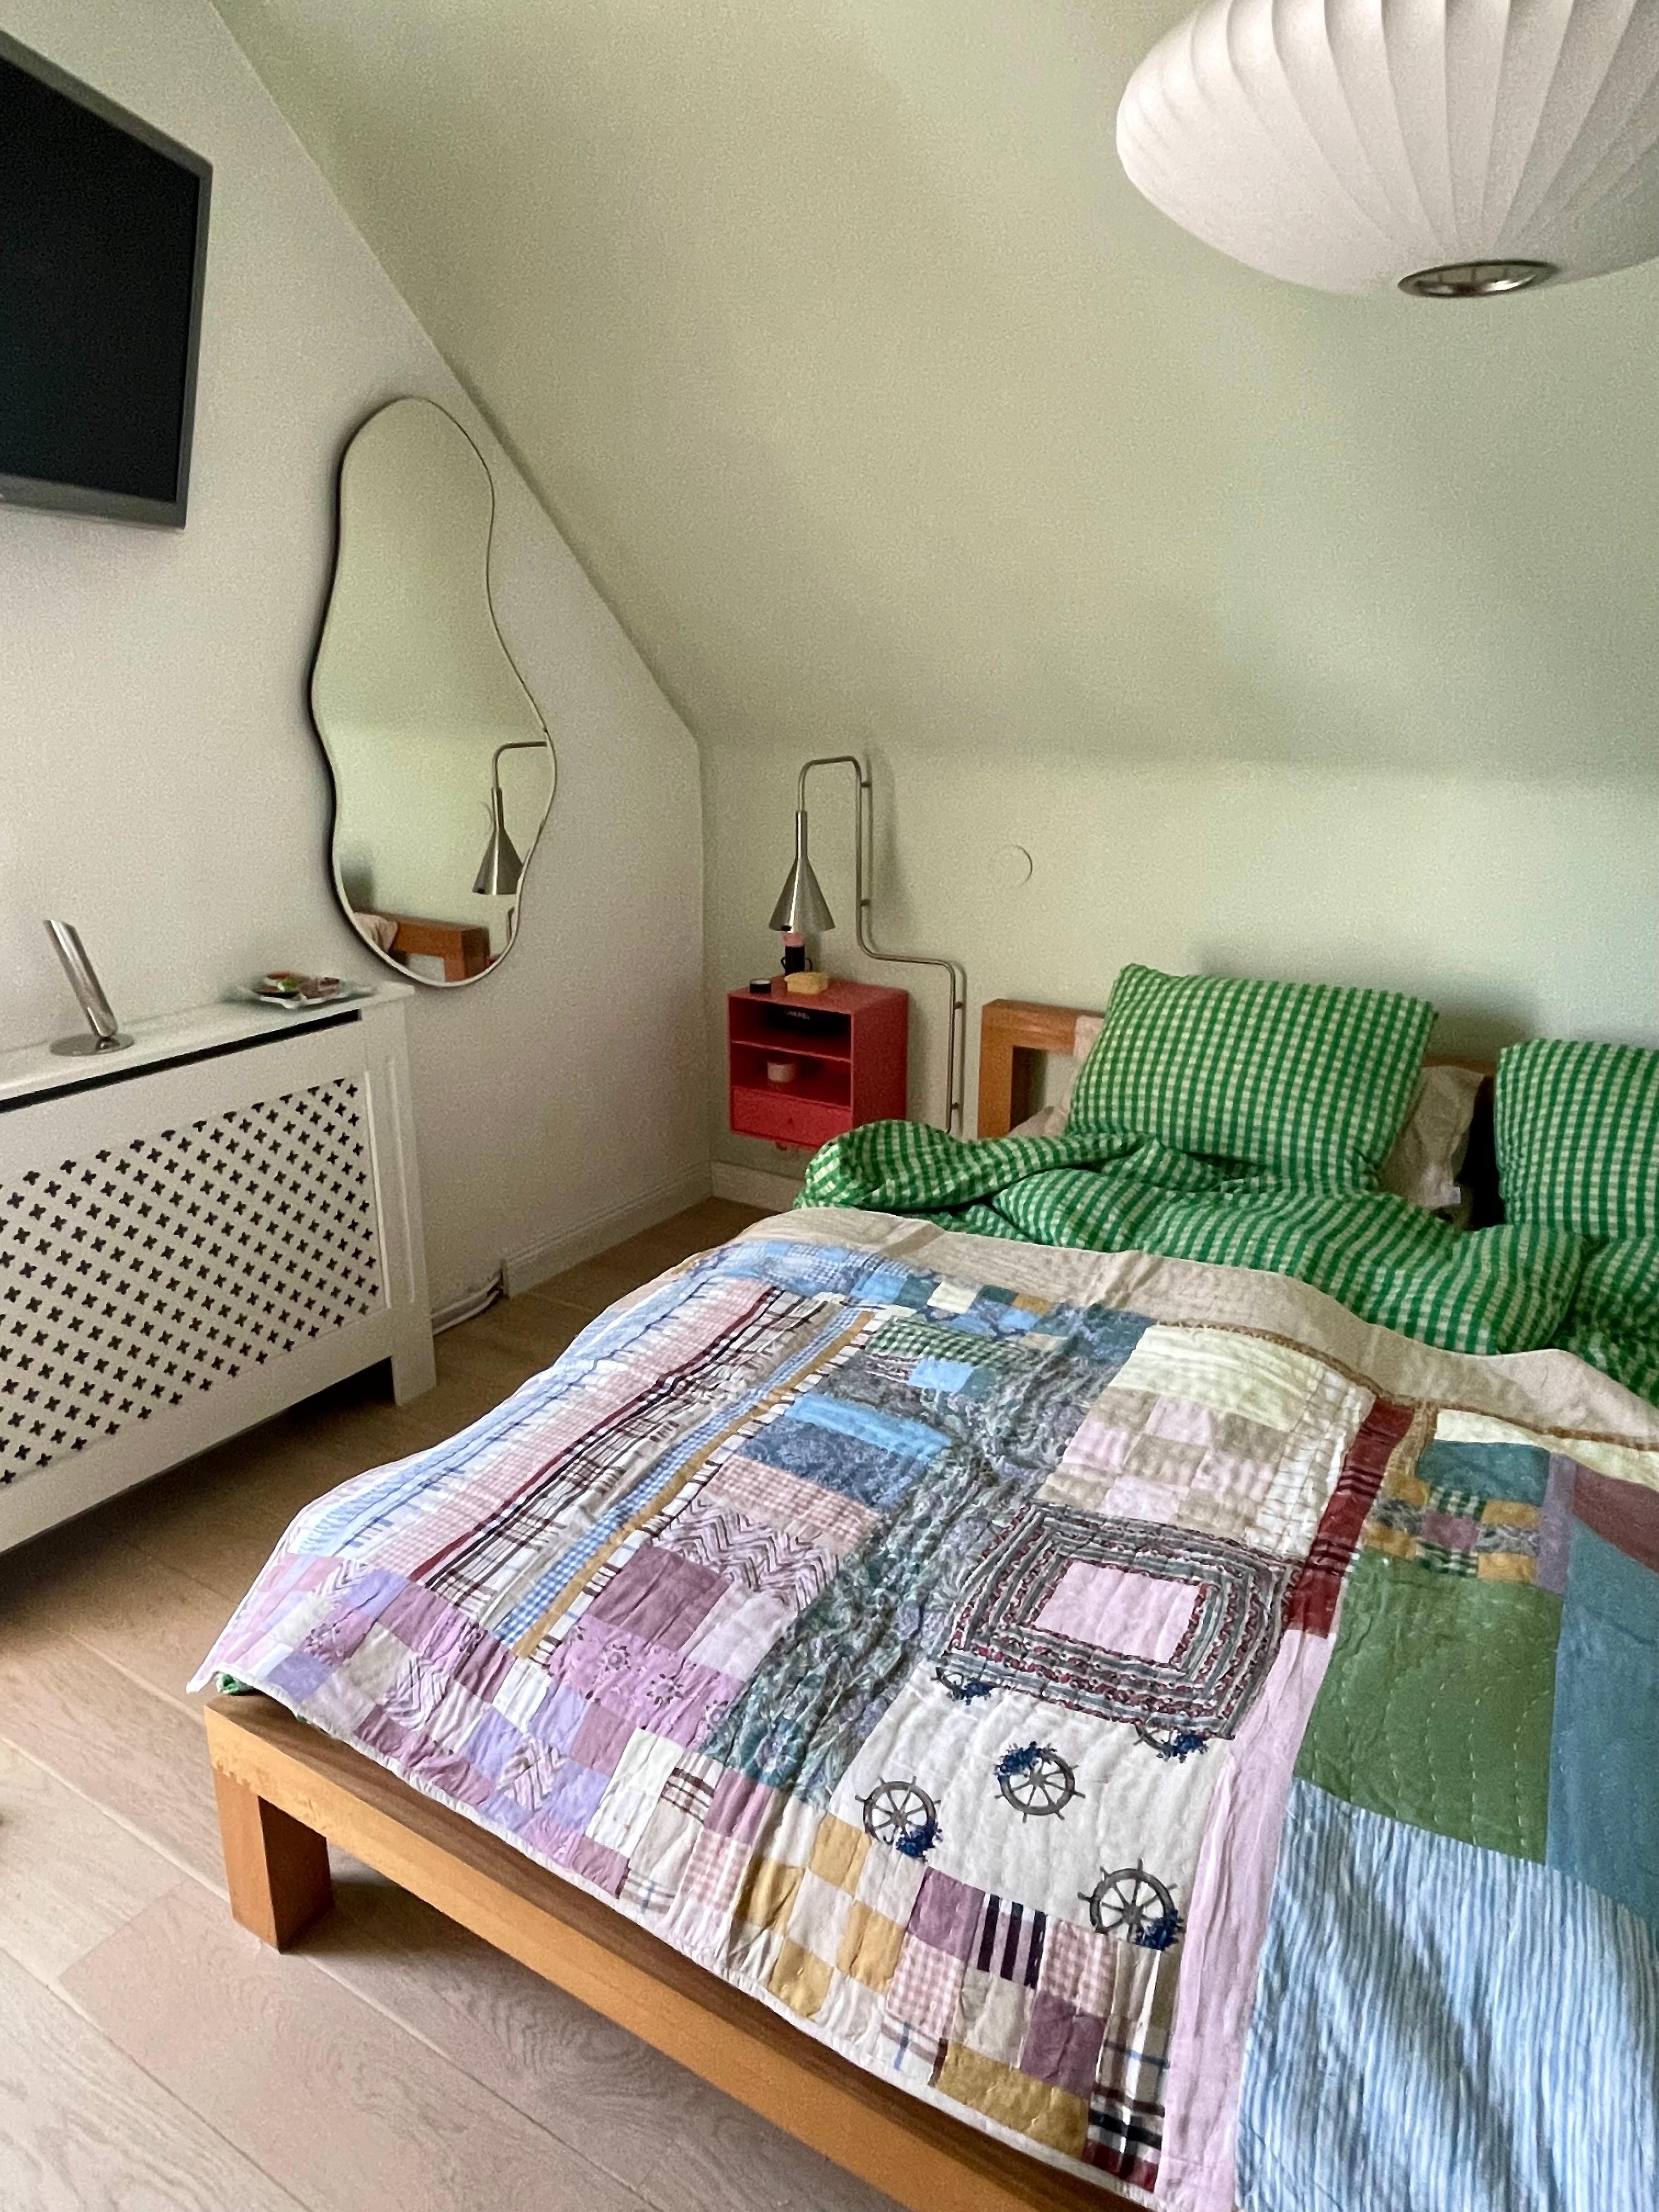 #living #home #interior #interiør #altbauliebe #wohnen #skandinavisch #couchstyle #schlafzimmer #bett #bettwäsche #lampe #farben